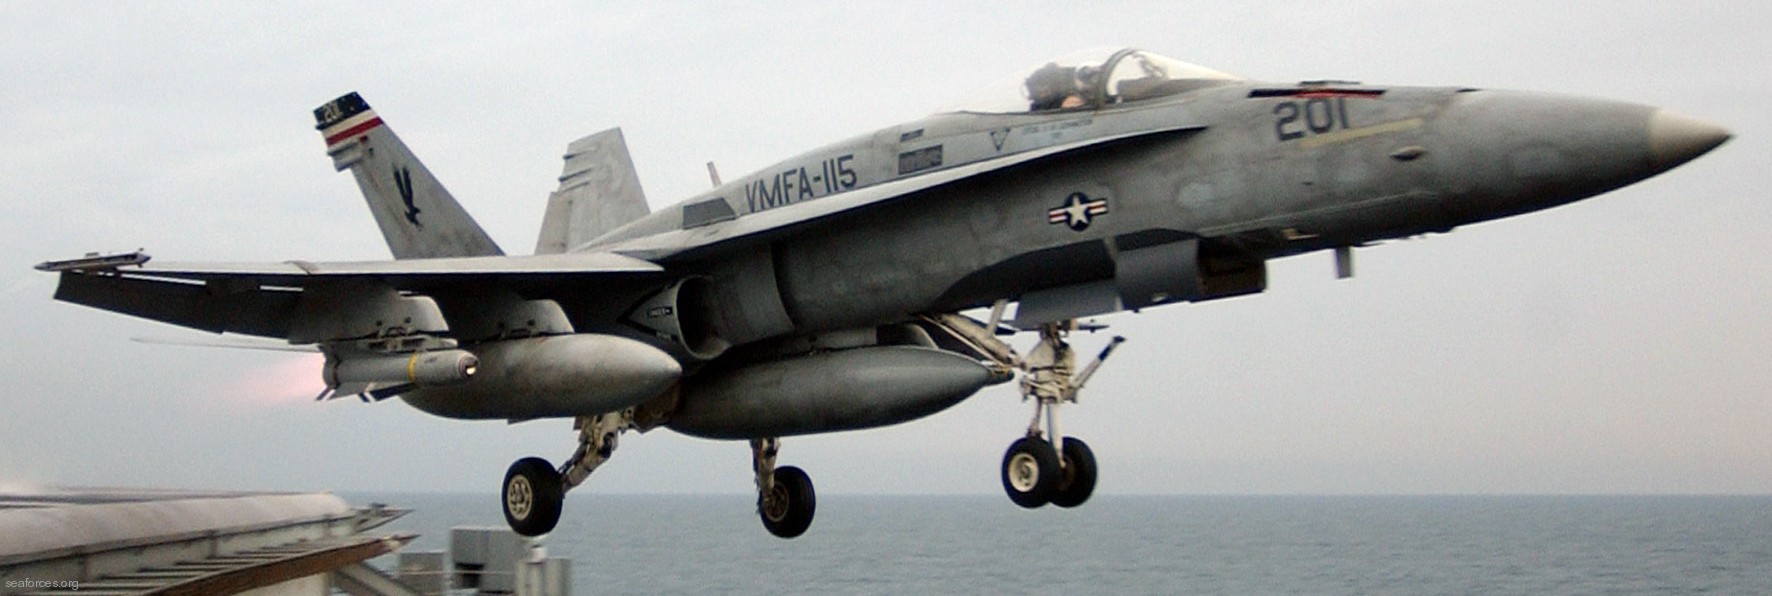 vmfa-115 silver eagles marine fighter attack squadron f/a-18a+ hornet 27